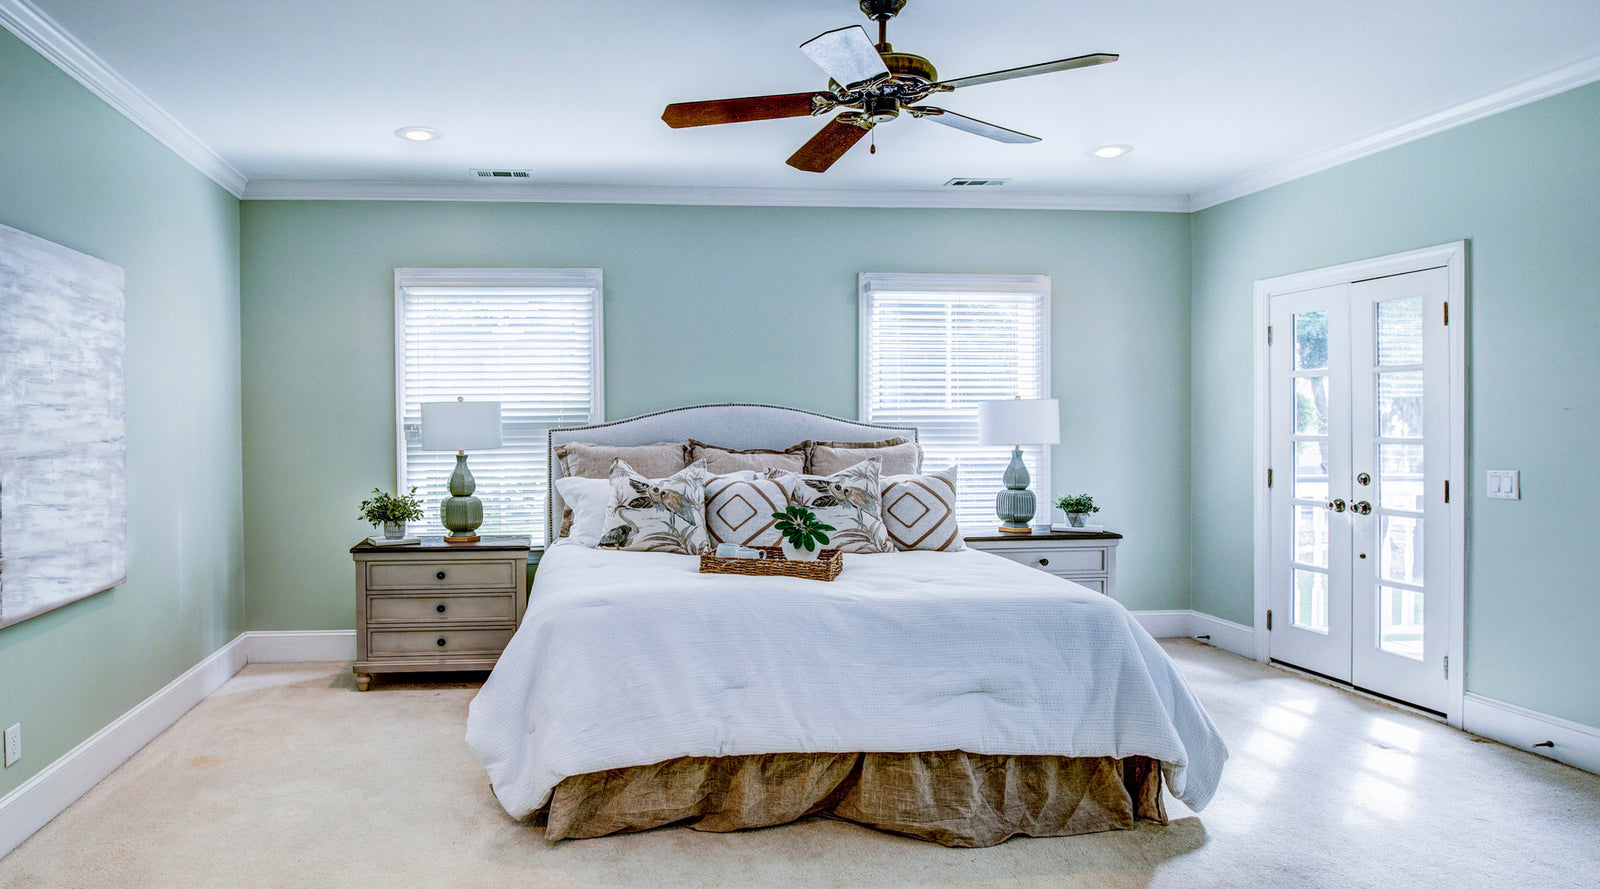 Modern ceiling fan shown in master bedroom